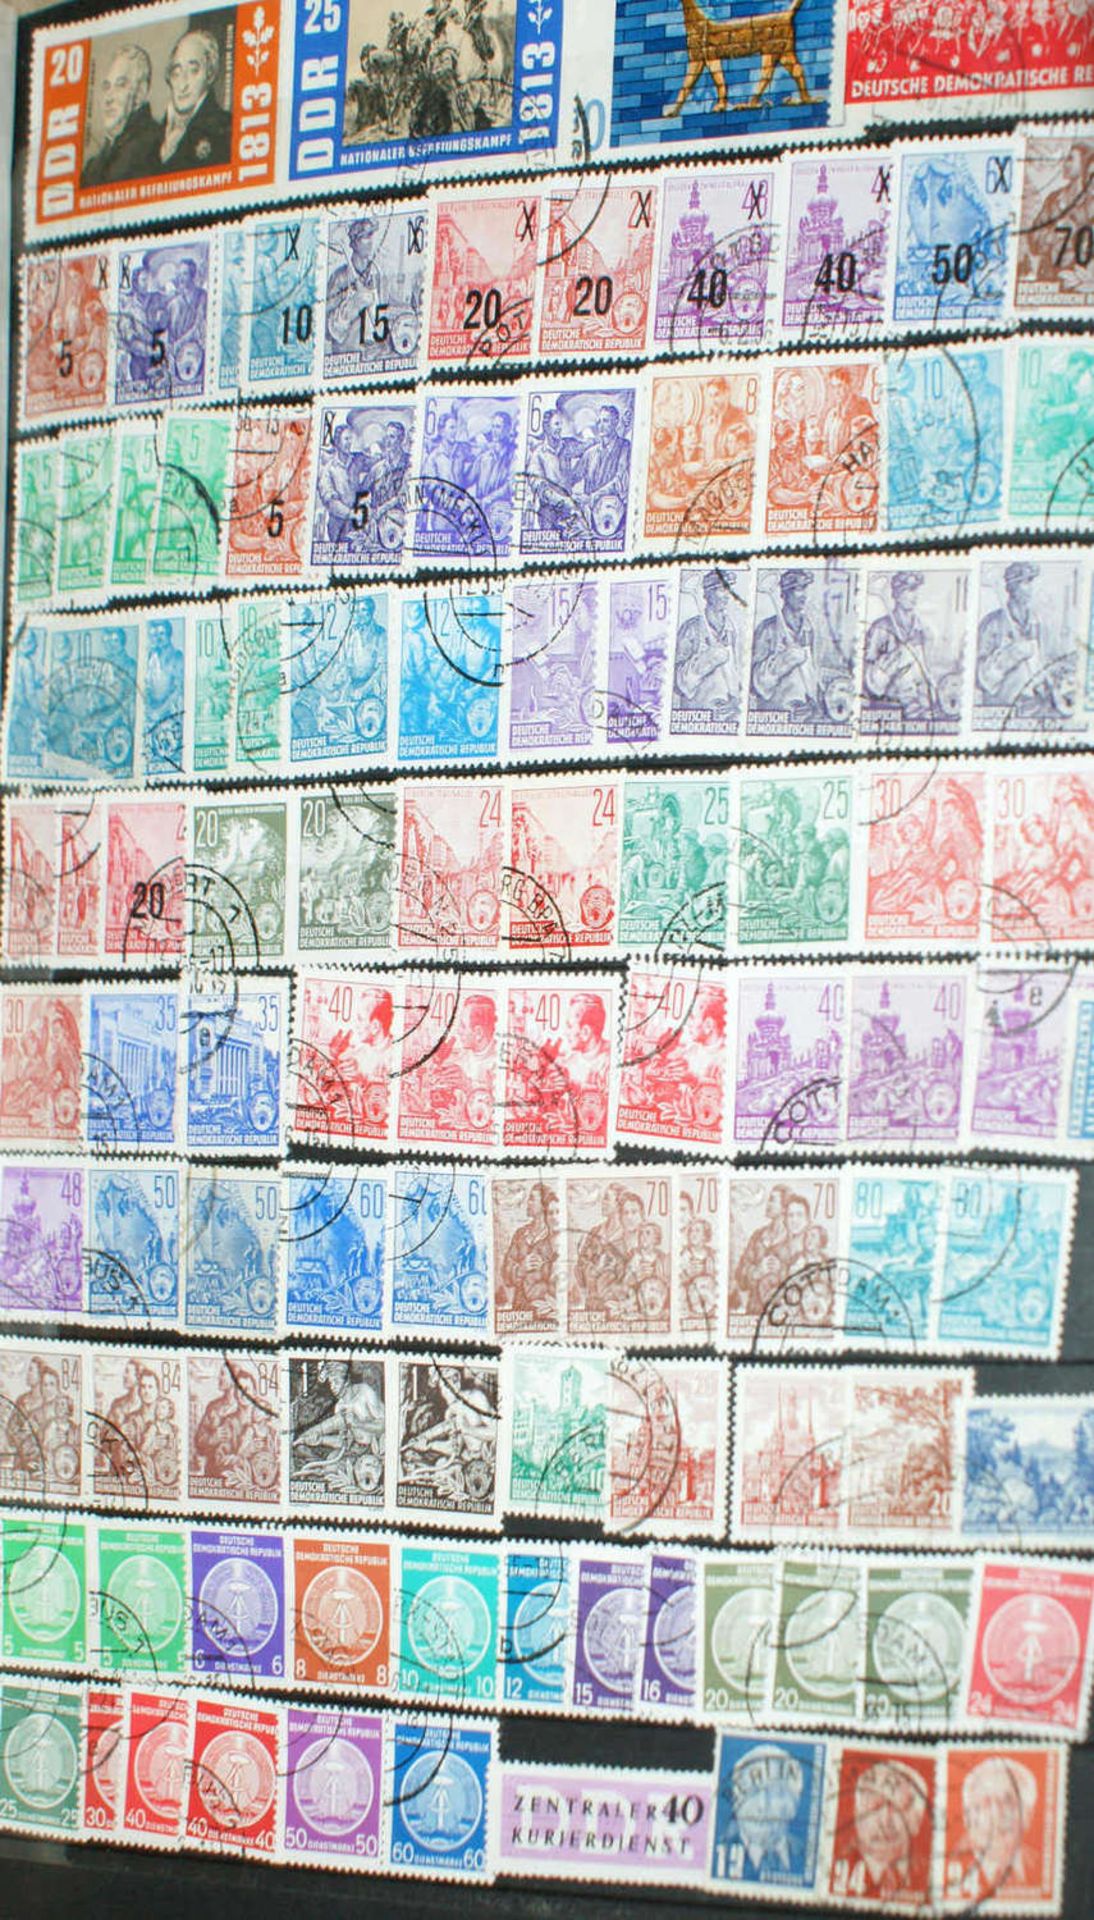 DDR - Briefmarken Dubletten Konvolut, bestehend aus 16 Alben, teilweise schlecht gelagert. - Bild 2 aus 4